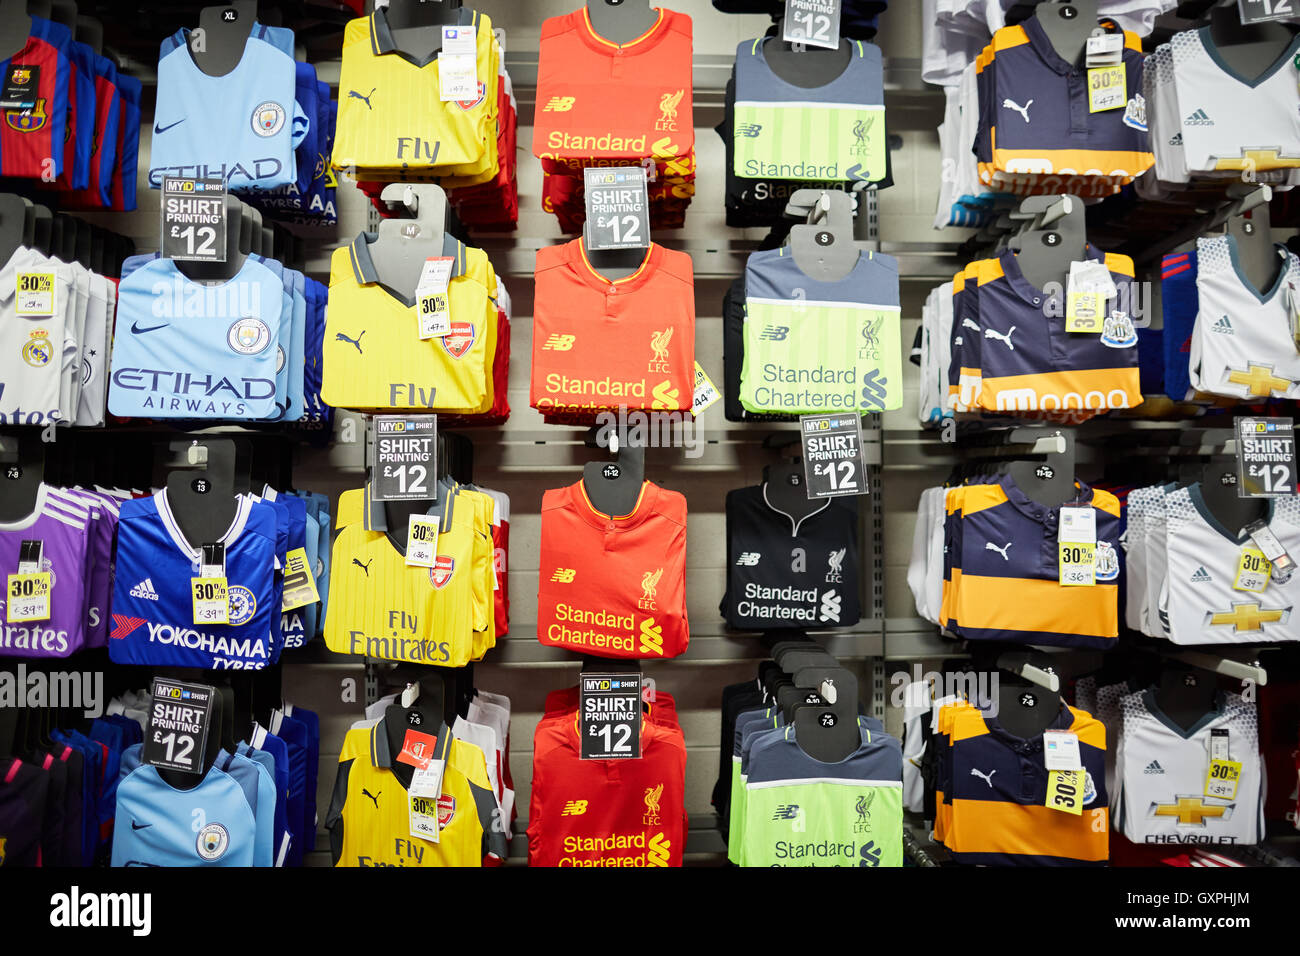 Sports Direct Camisetas de fútbol shop mostrar camisetas réplica oficial del equipo de la Premiership tops strip wall display para comprar Arsenal Liv Foto de stock